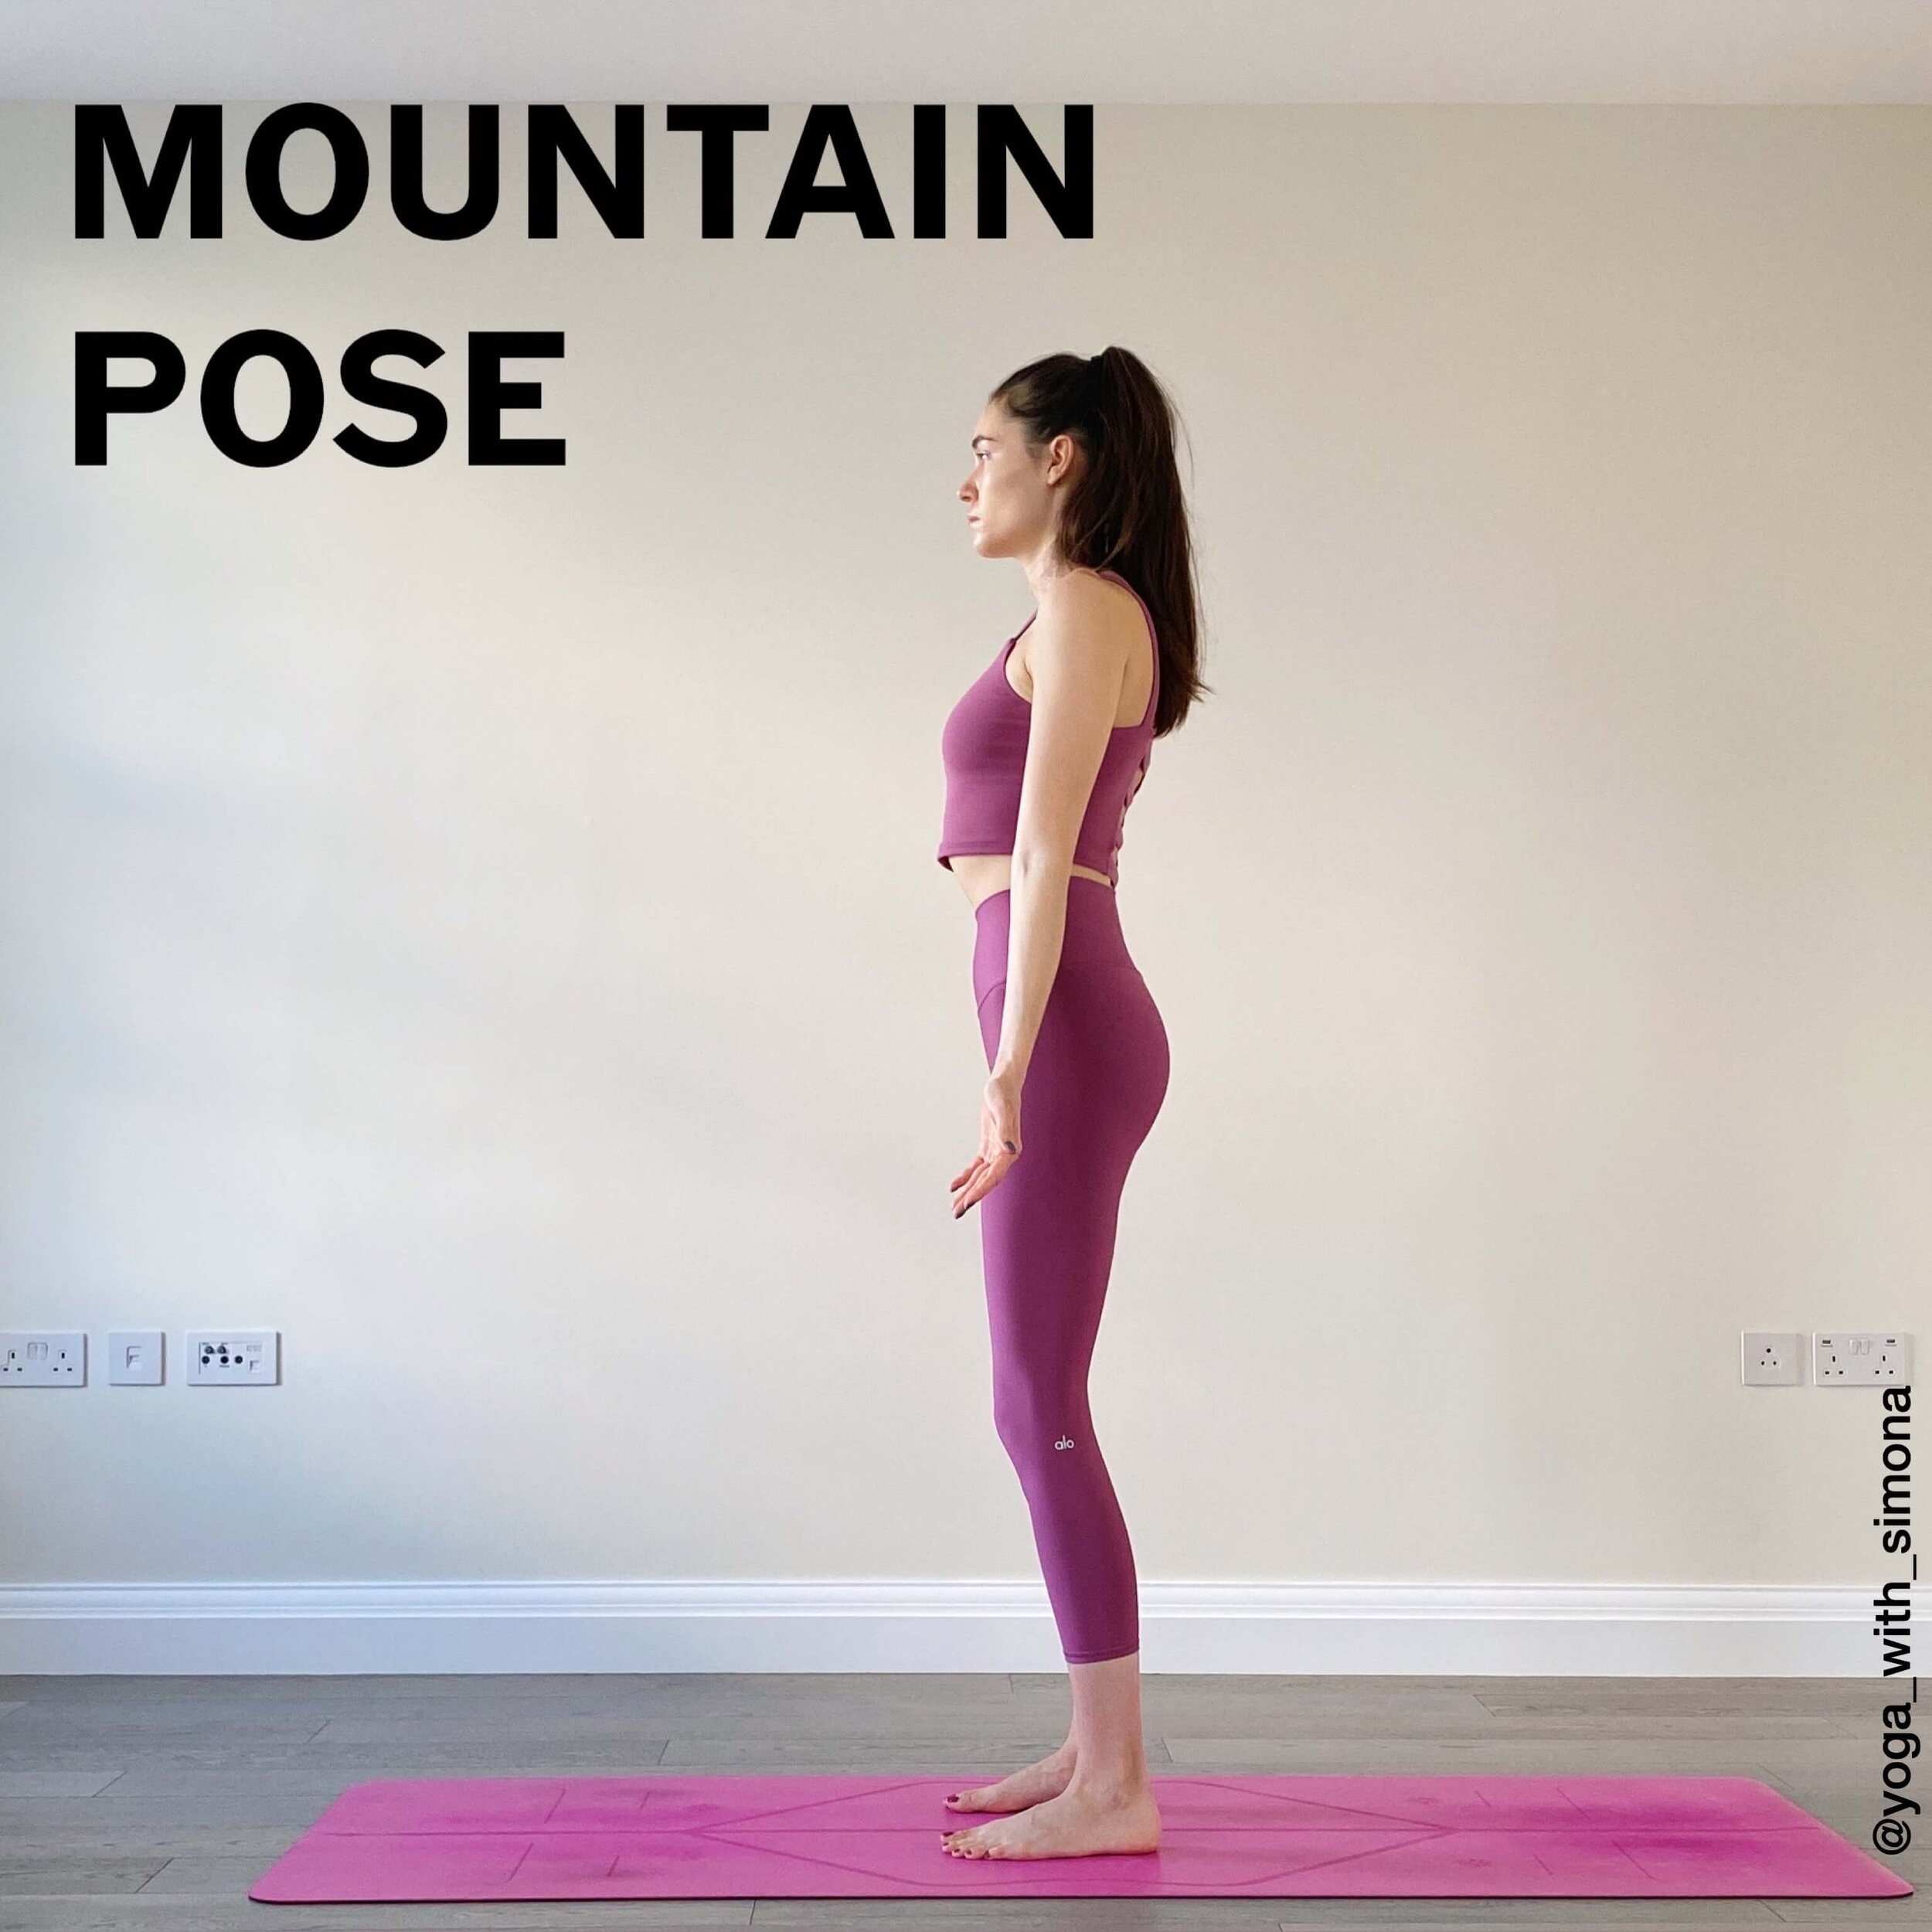 10 Standing Yoga Poses For Beginners Yoga With Simona